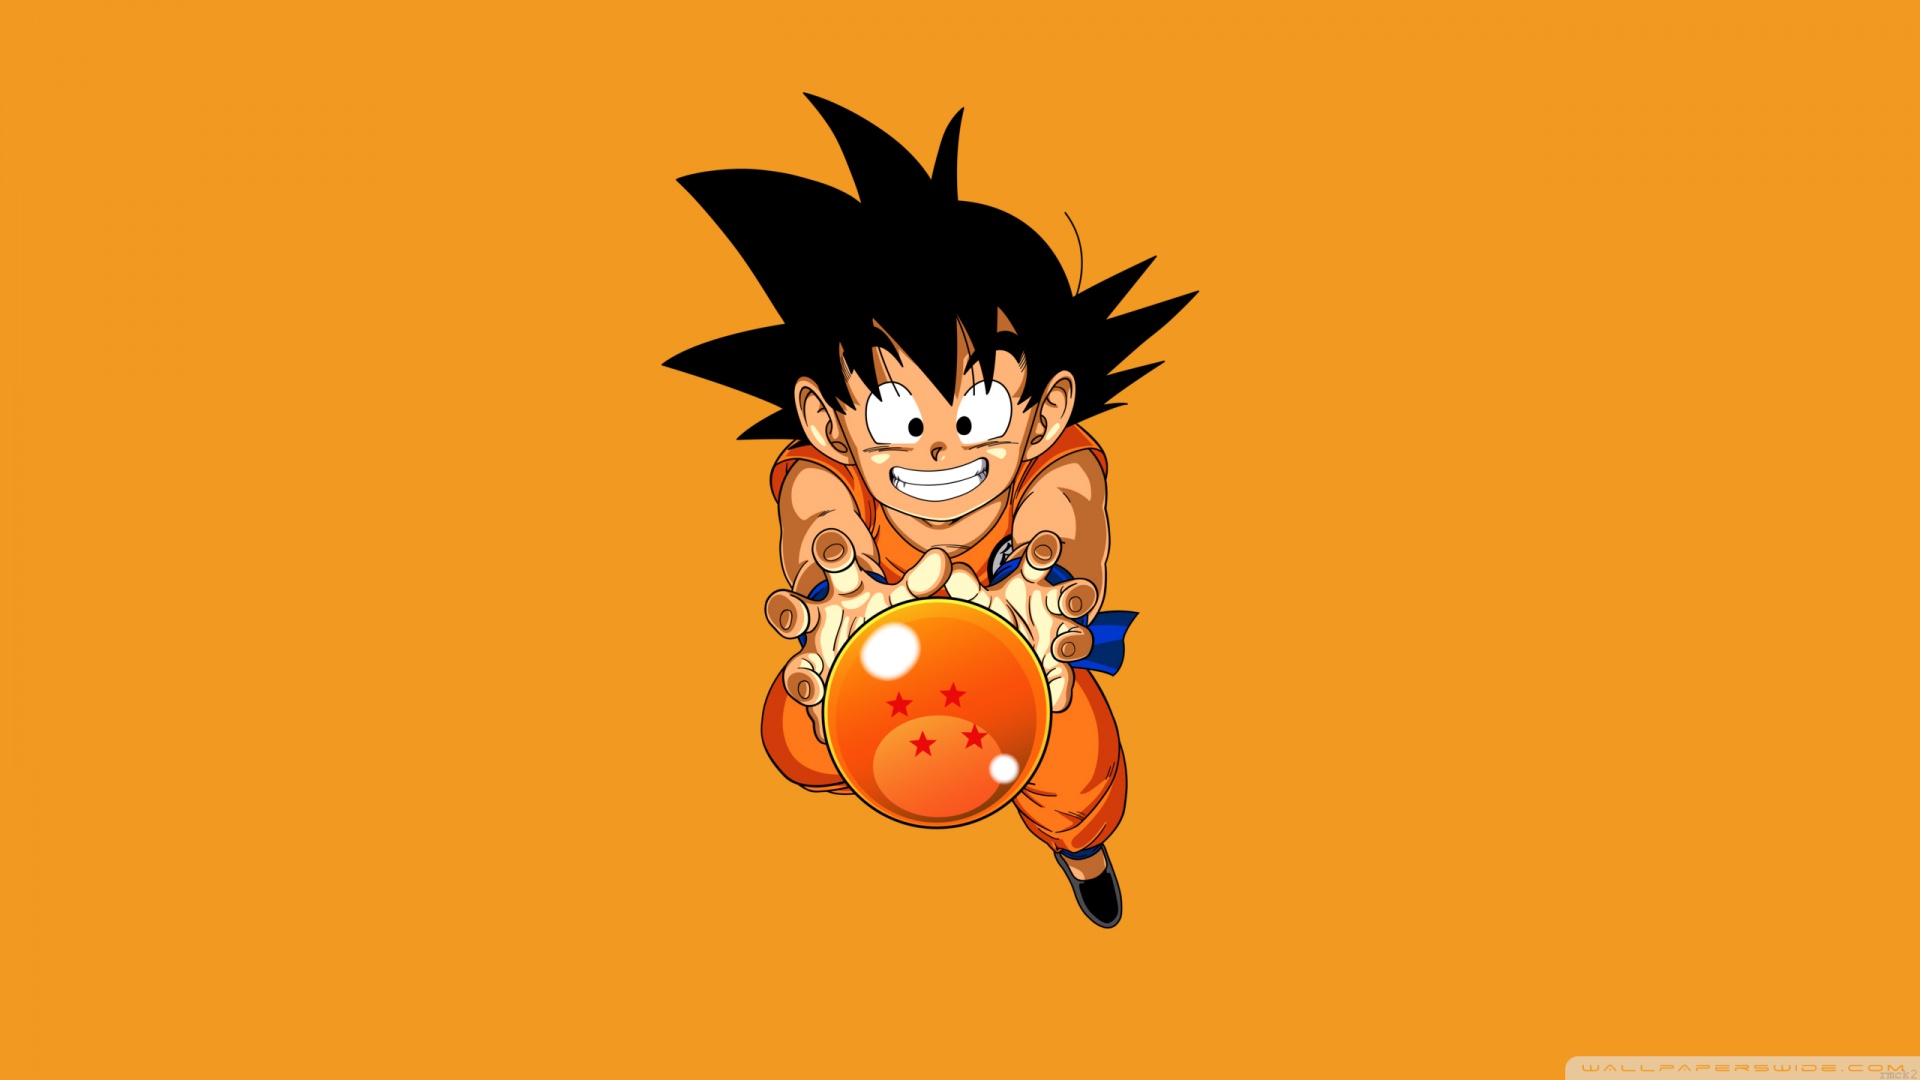 Small Goku HD Wallpaper | 1920x1080 | ID:56192